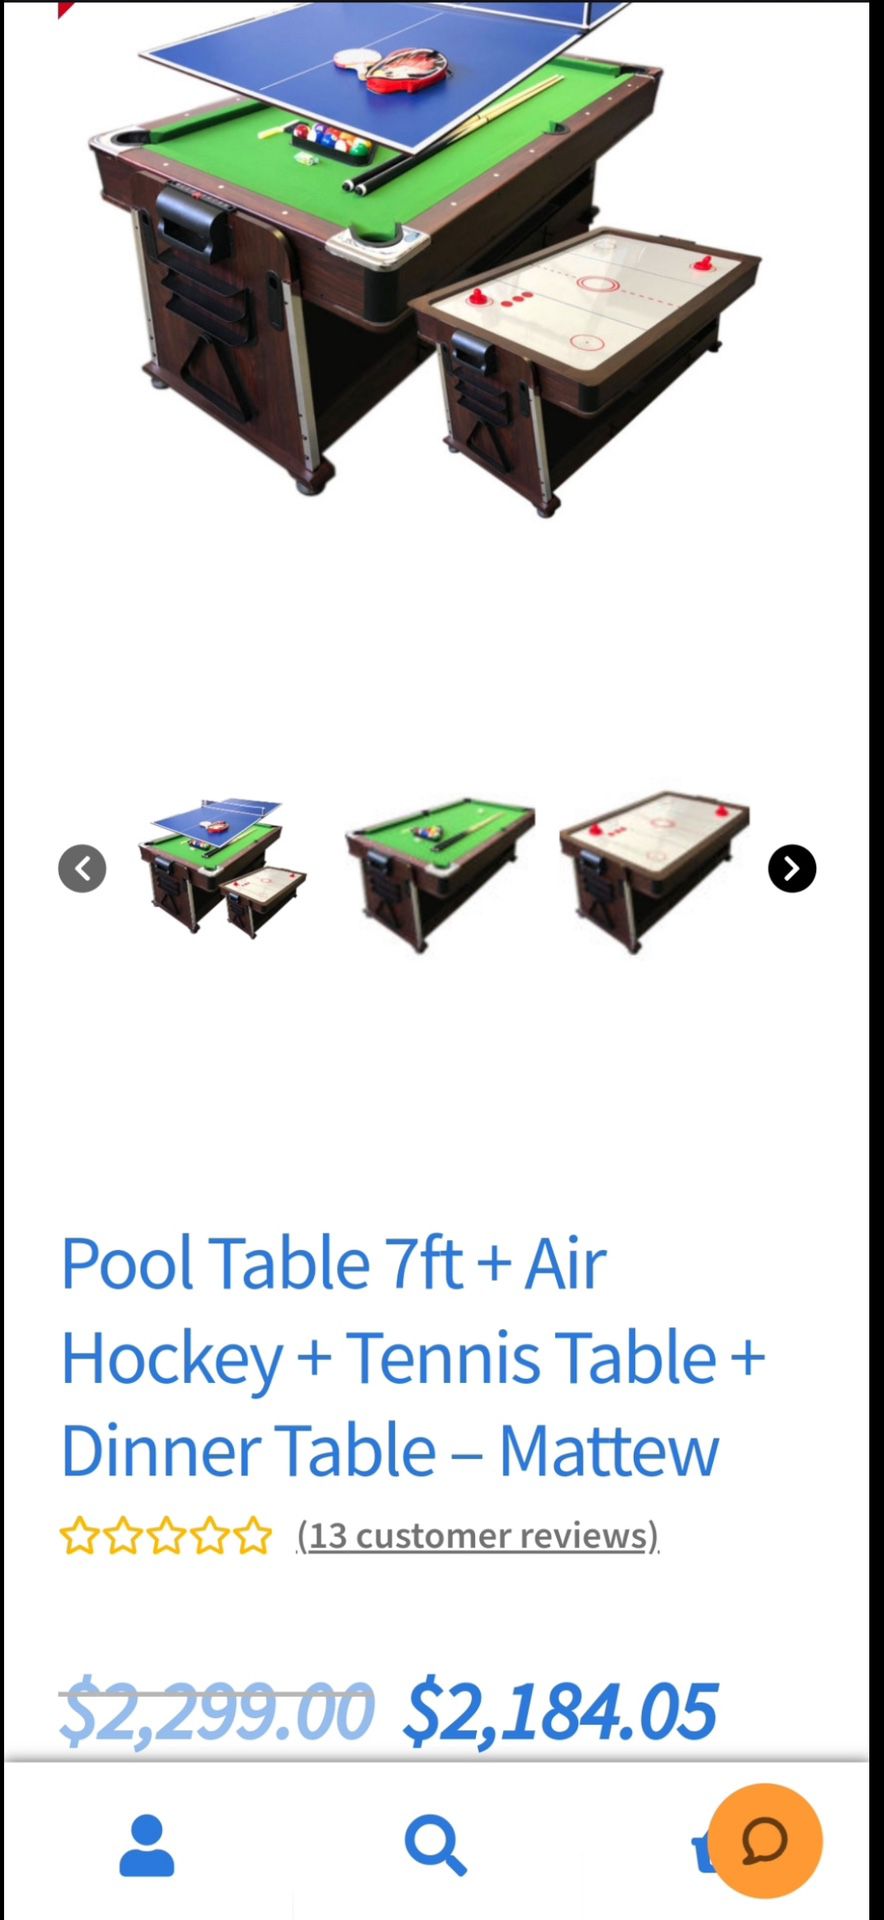 Pool Table 7ft + Air Hockey + Tennis Table + Dinner Table